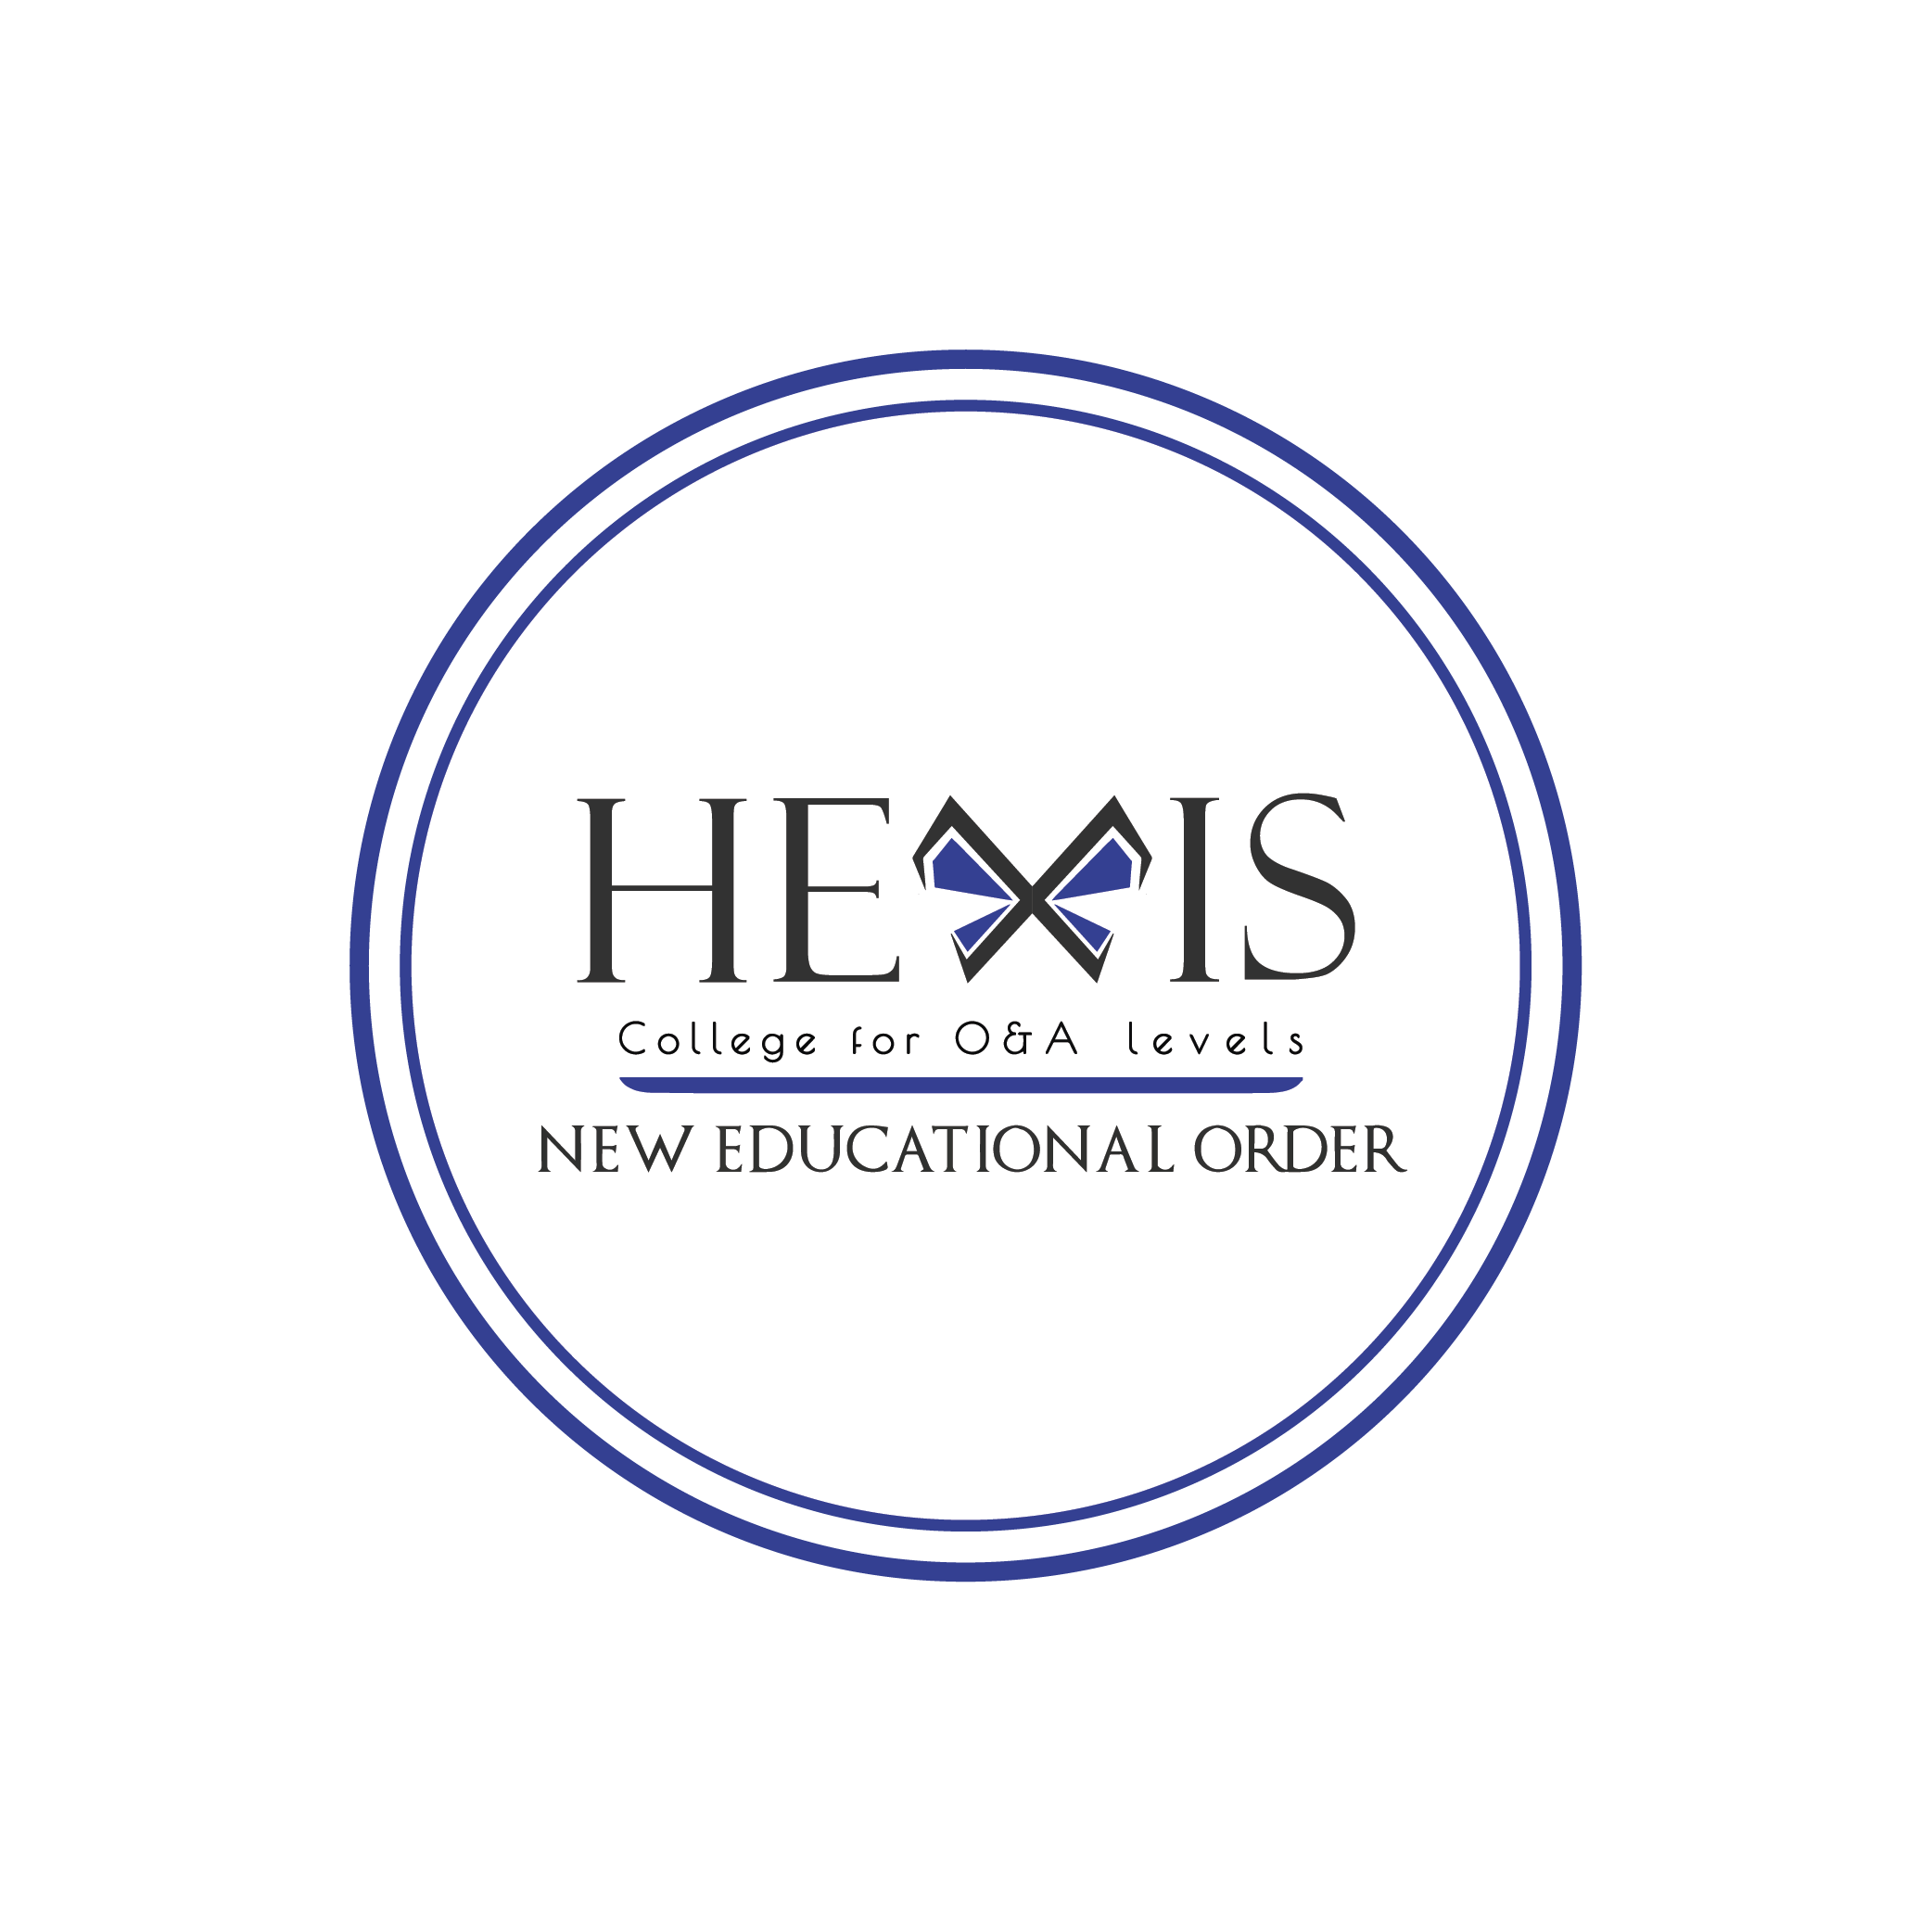 Hexis College